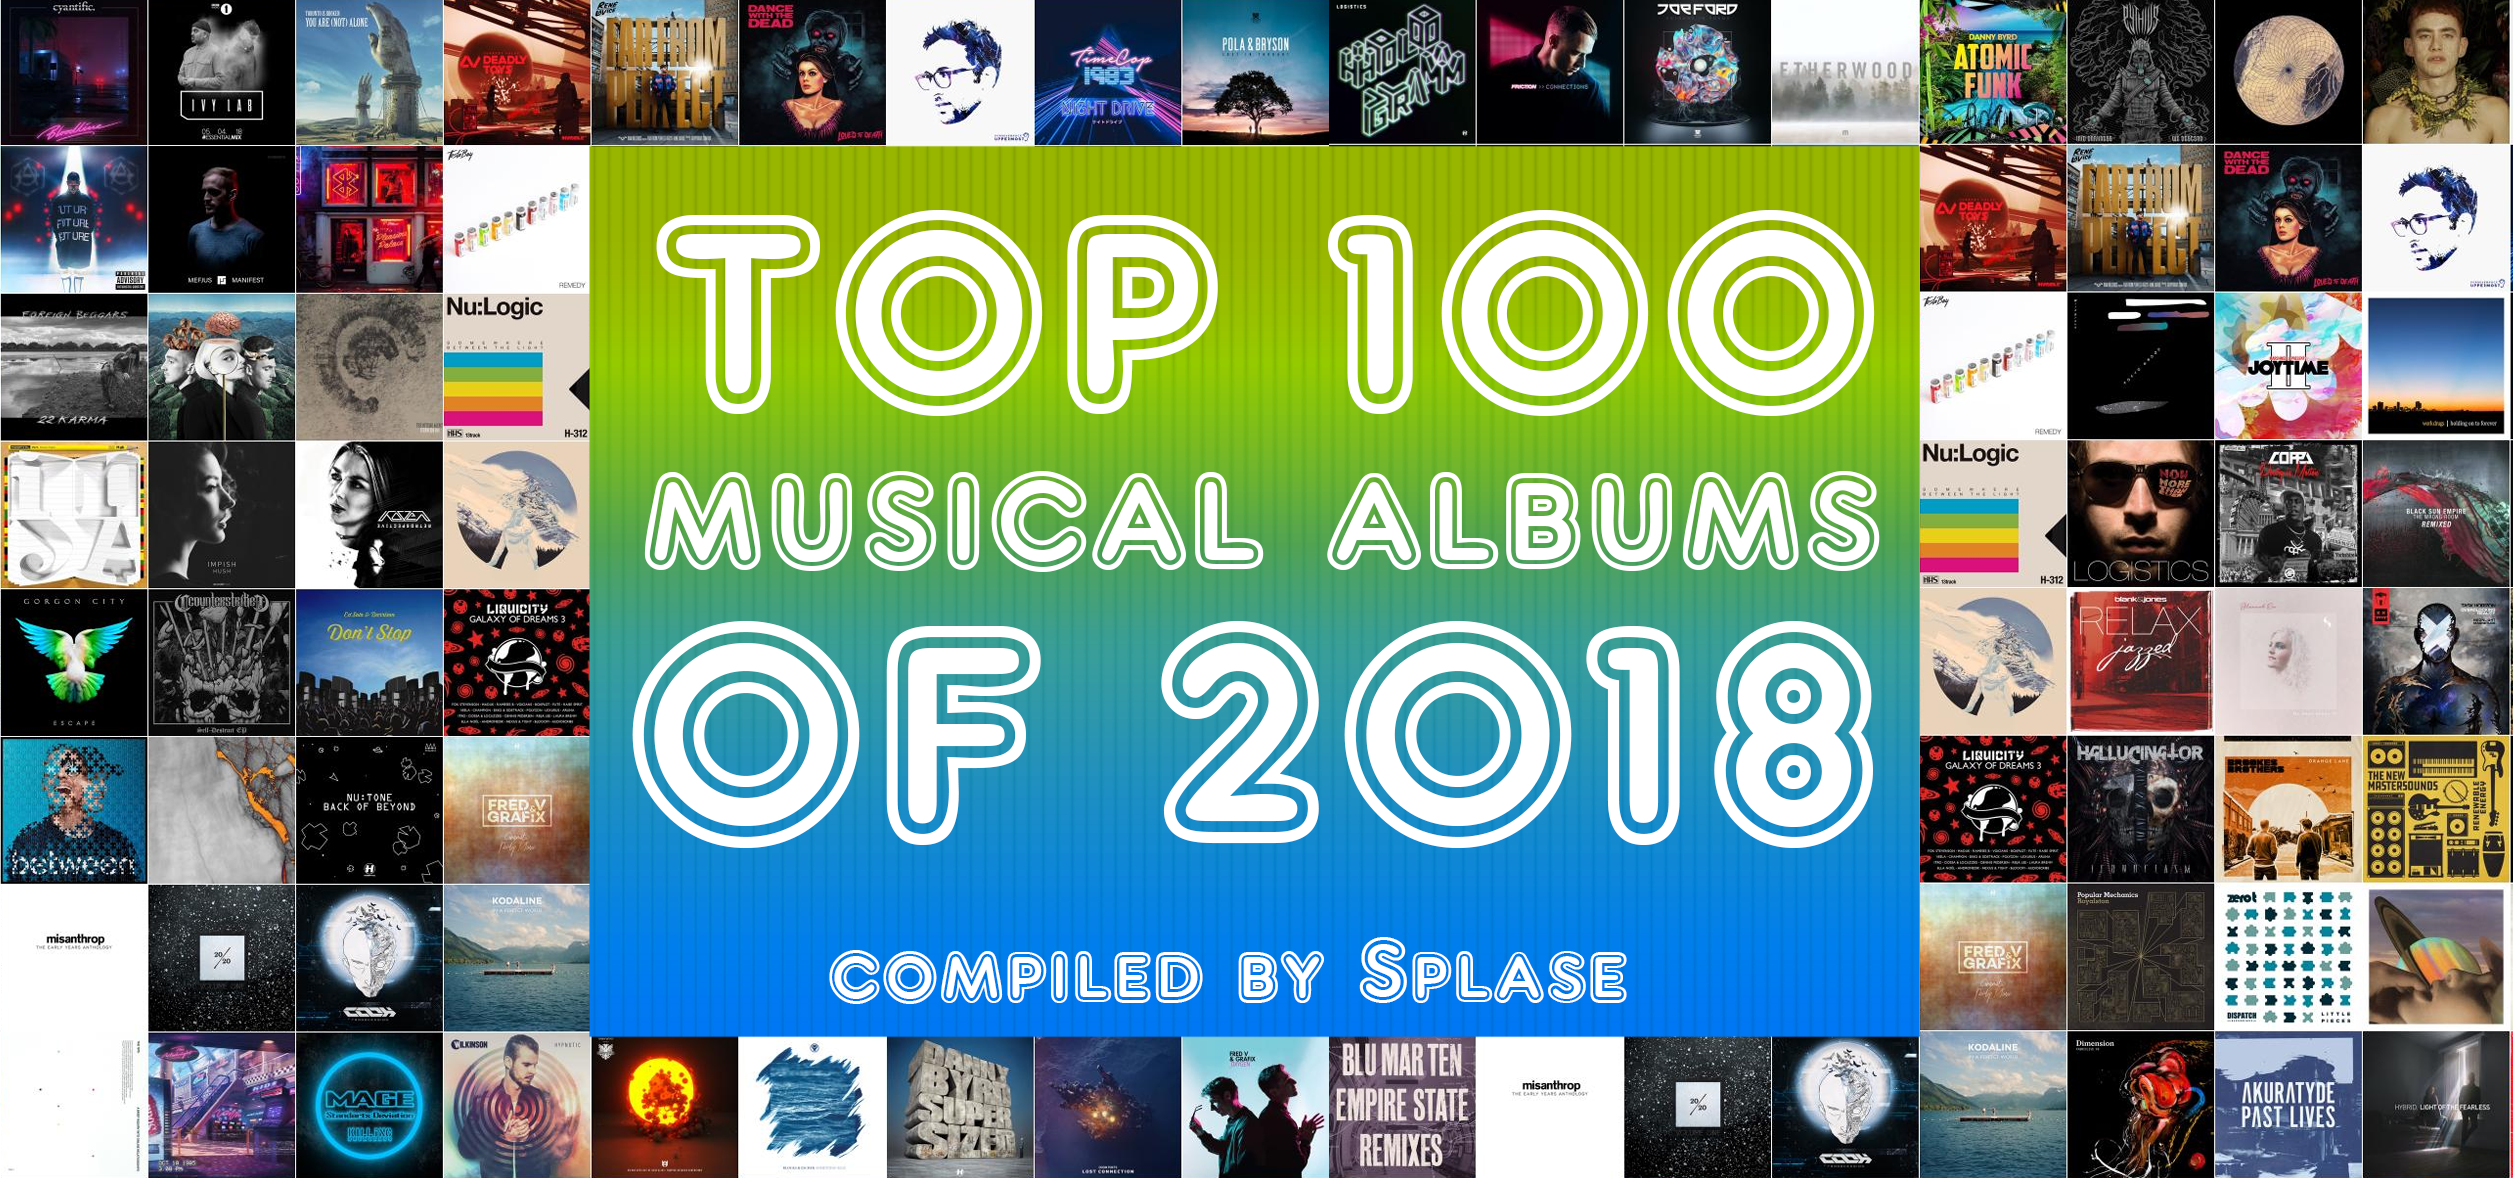 ТОП 100 Музыкальных Альбомов 2018 года по моей версии / TOP 100 Musical Albums of 2018 compiled by Splase